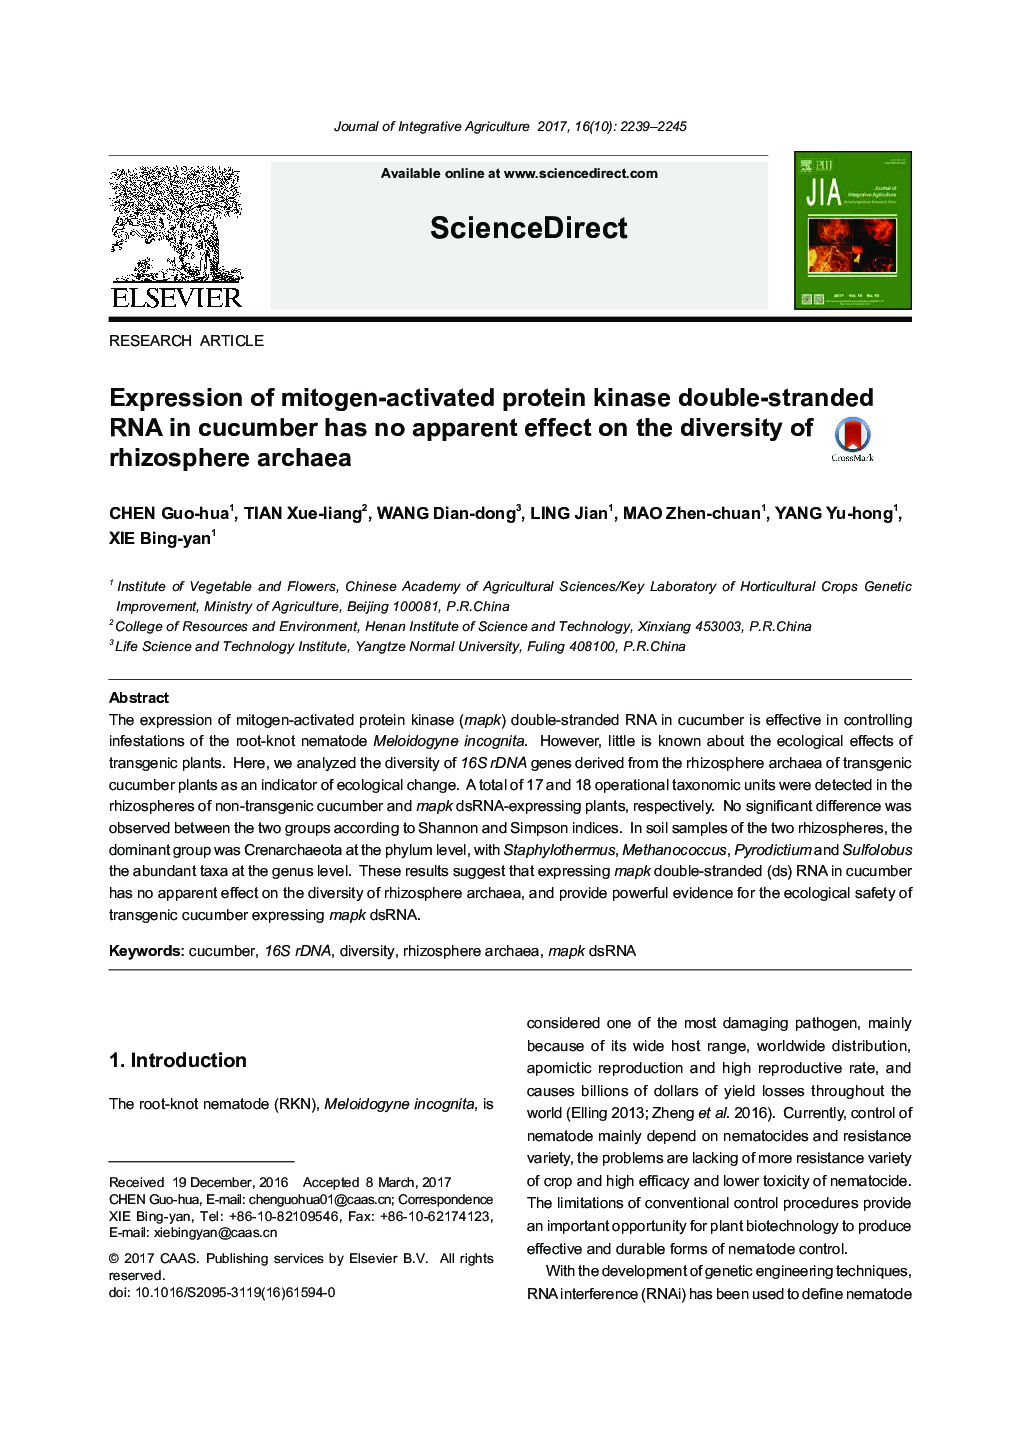 بیان پروتئین کیناز پروتئین متیوژن دوبعدی در خیار اثری آشکار بر تنوع آرشیوهای ریزوسفر ندارد 